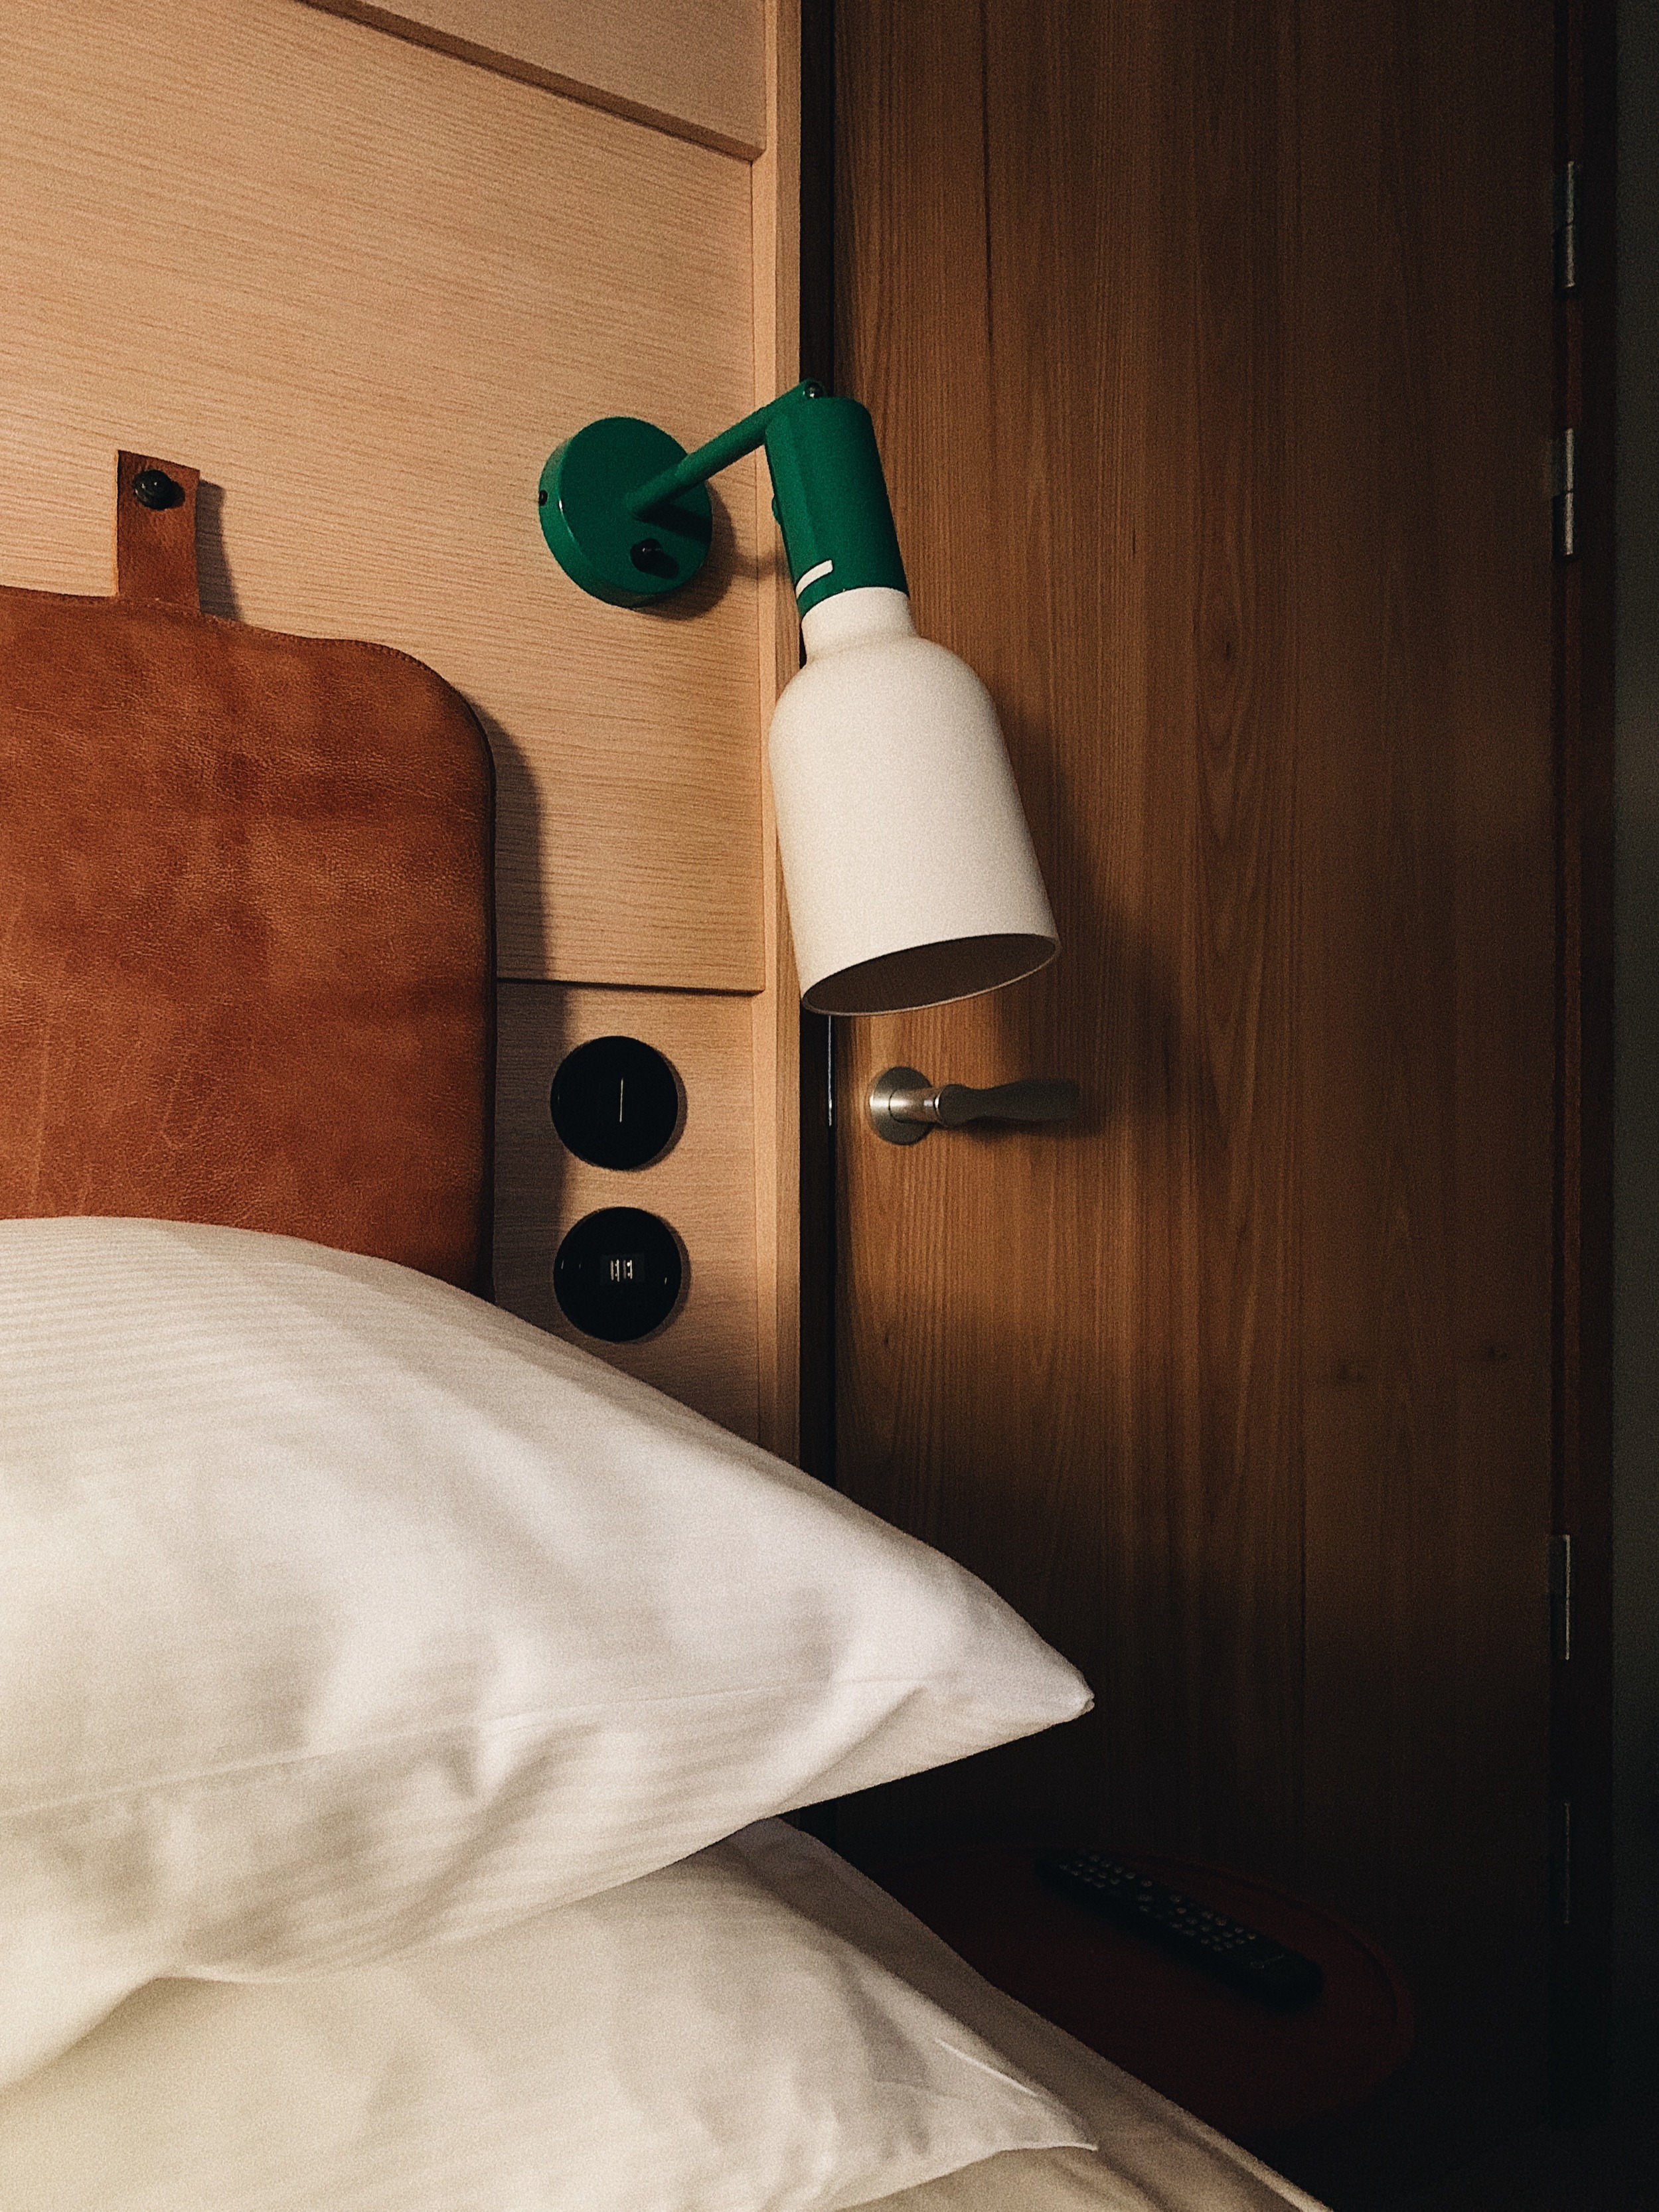 Kudde och lampa bredvid säng på hotell HOBO i Stockholm.